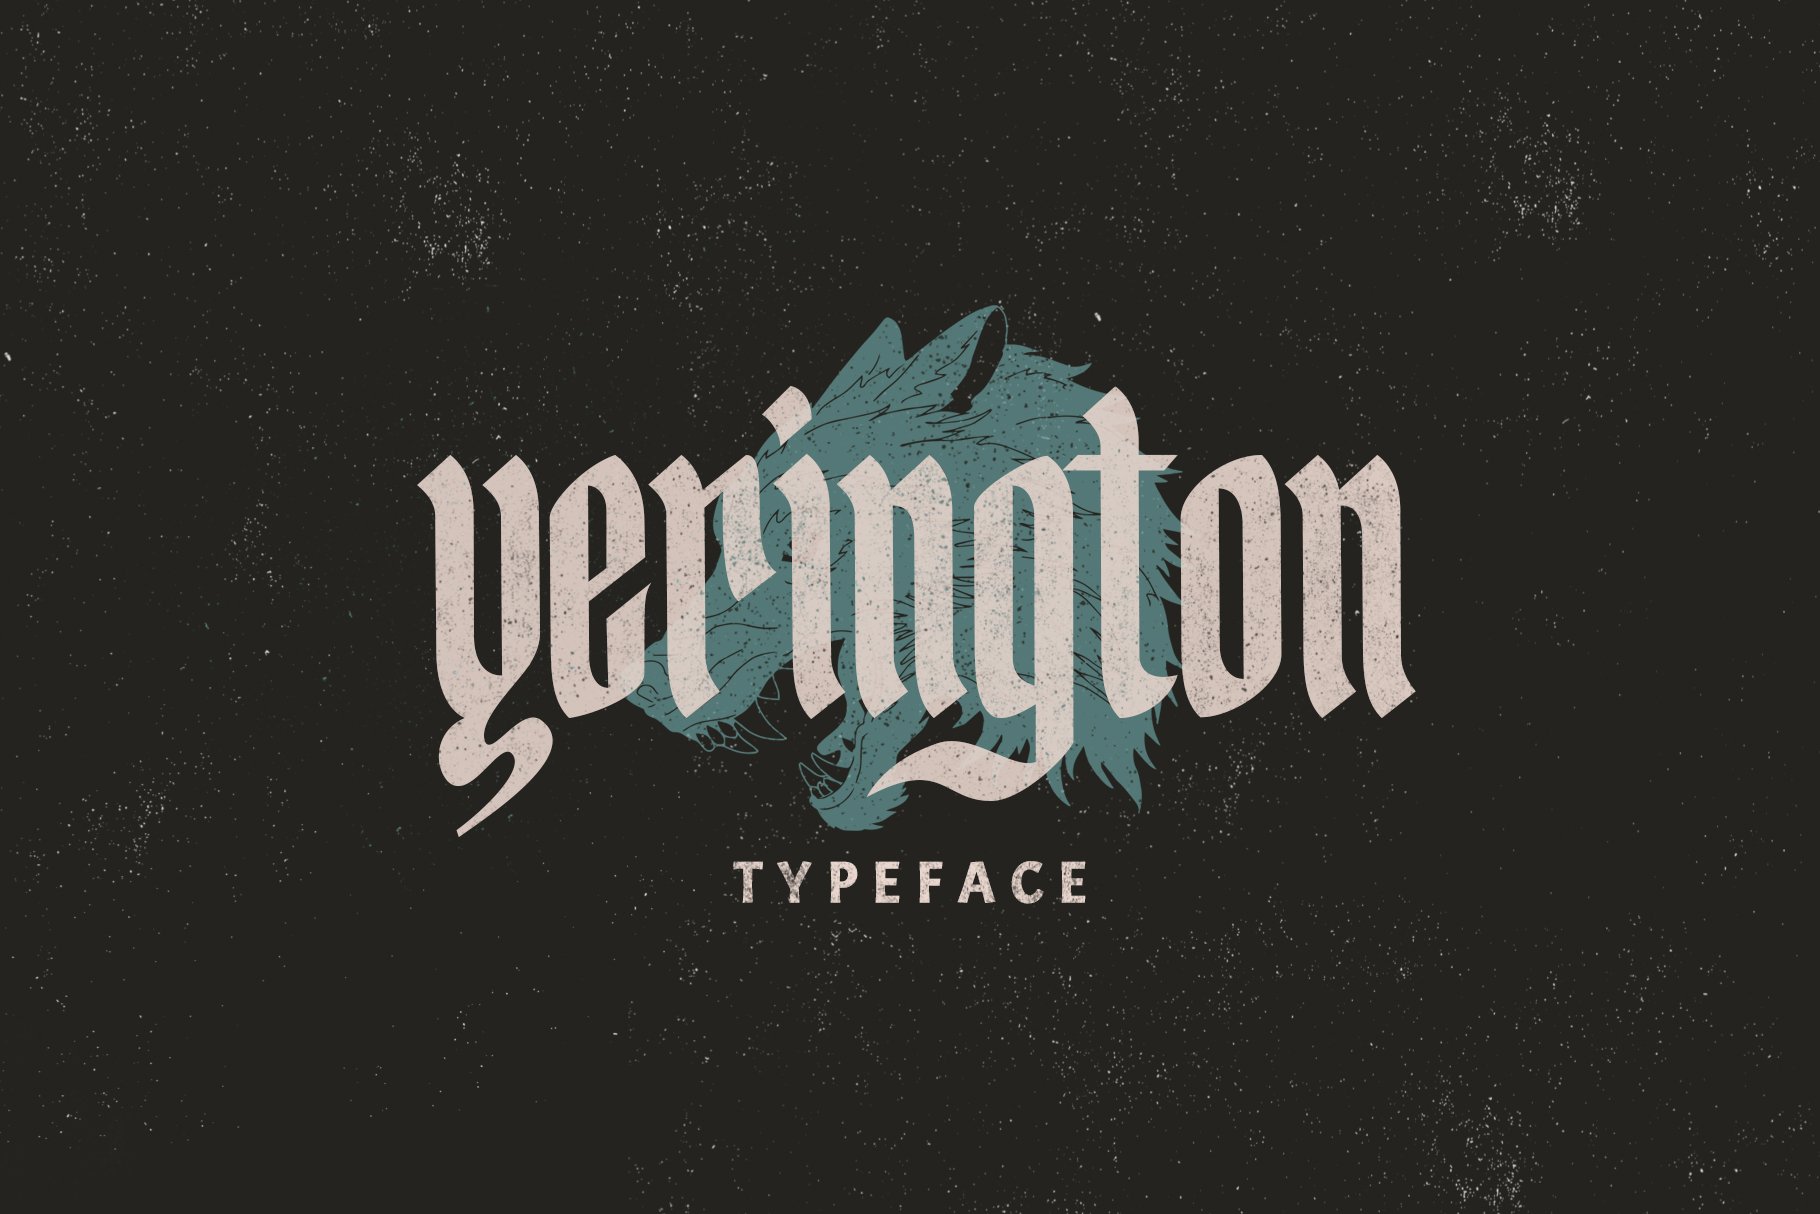 Yerington Typeface cover image.